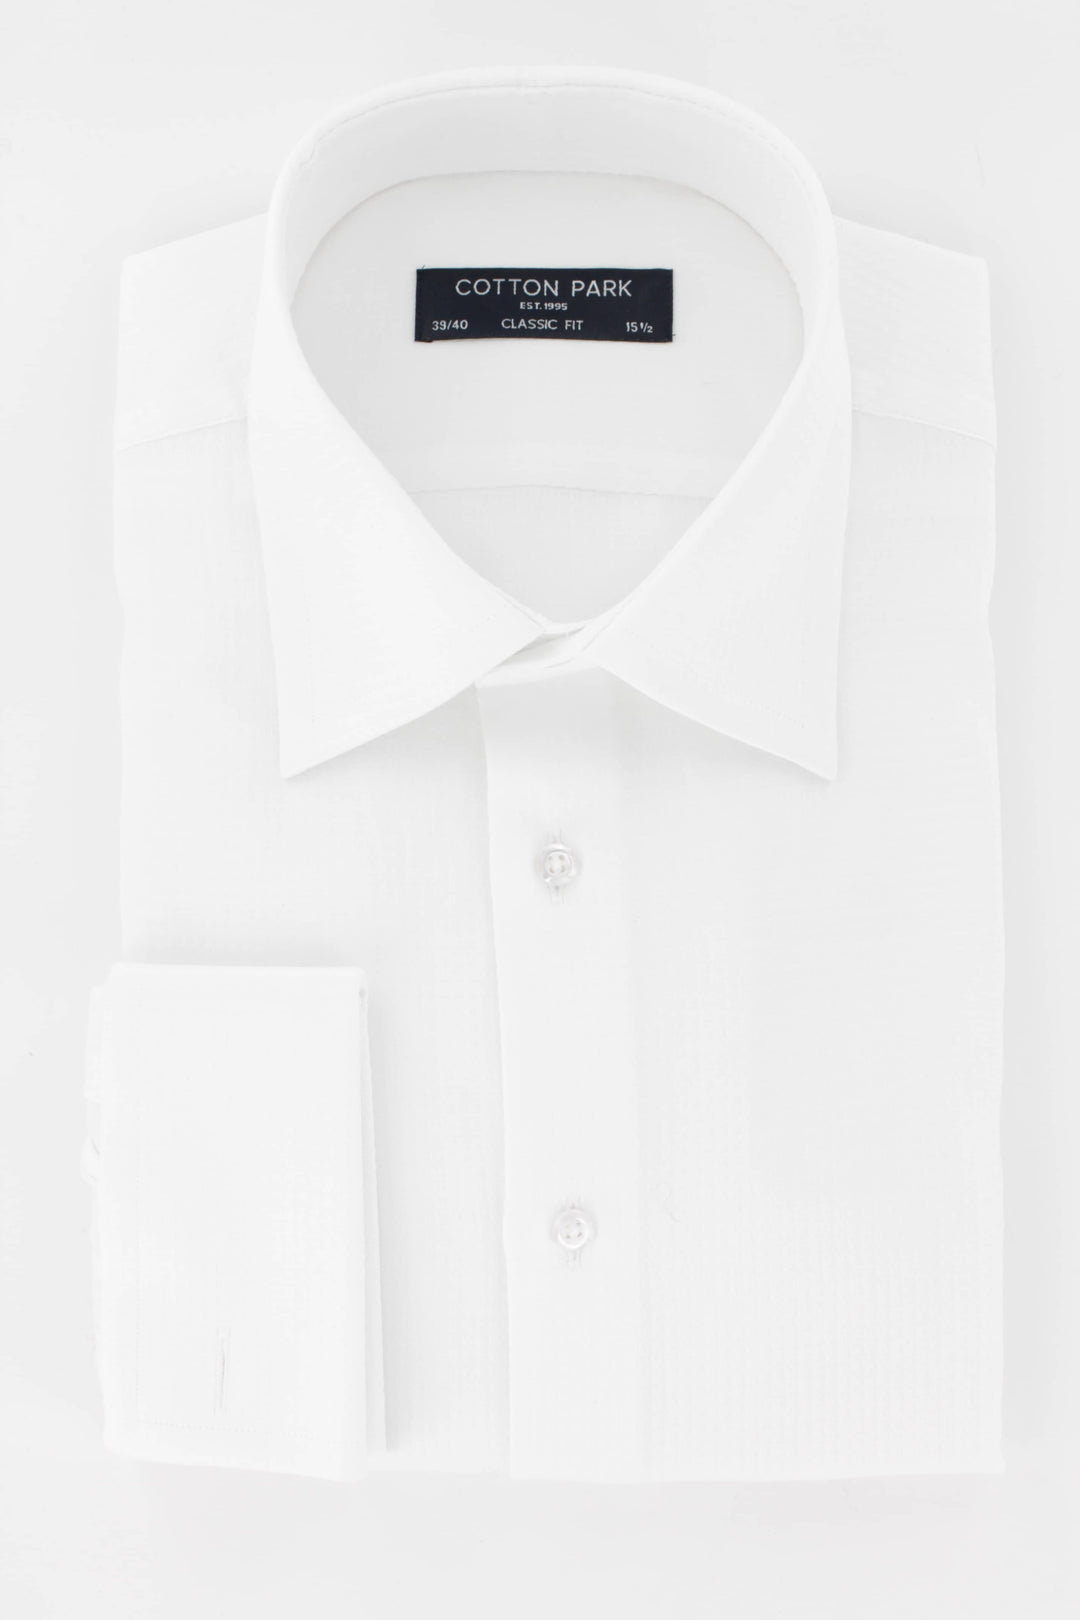 chemise-homme-blanche-col-classique-poignets-mousquetaires-coupe-droite-cotton-park